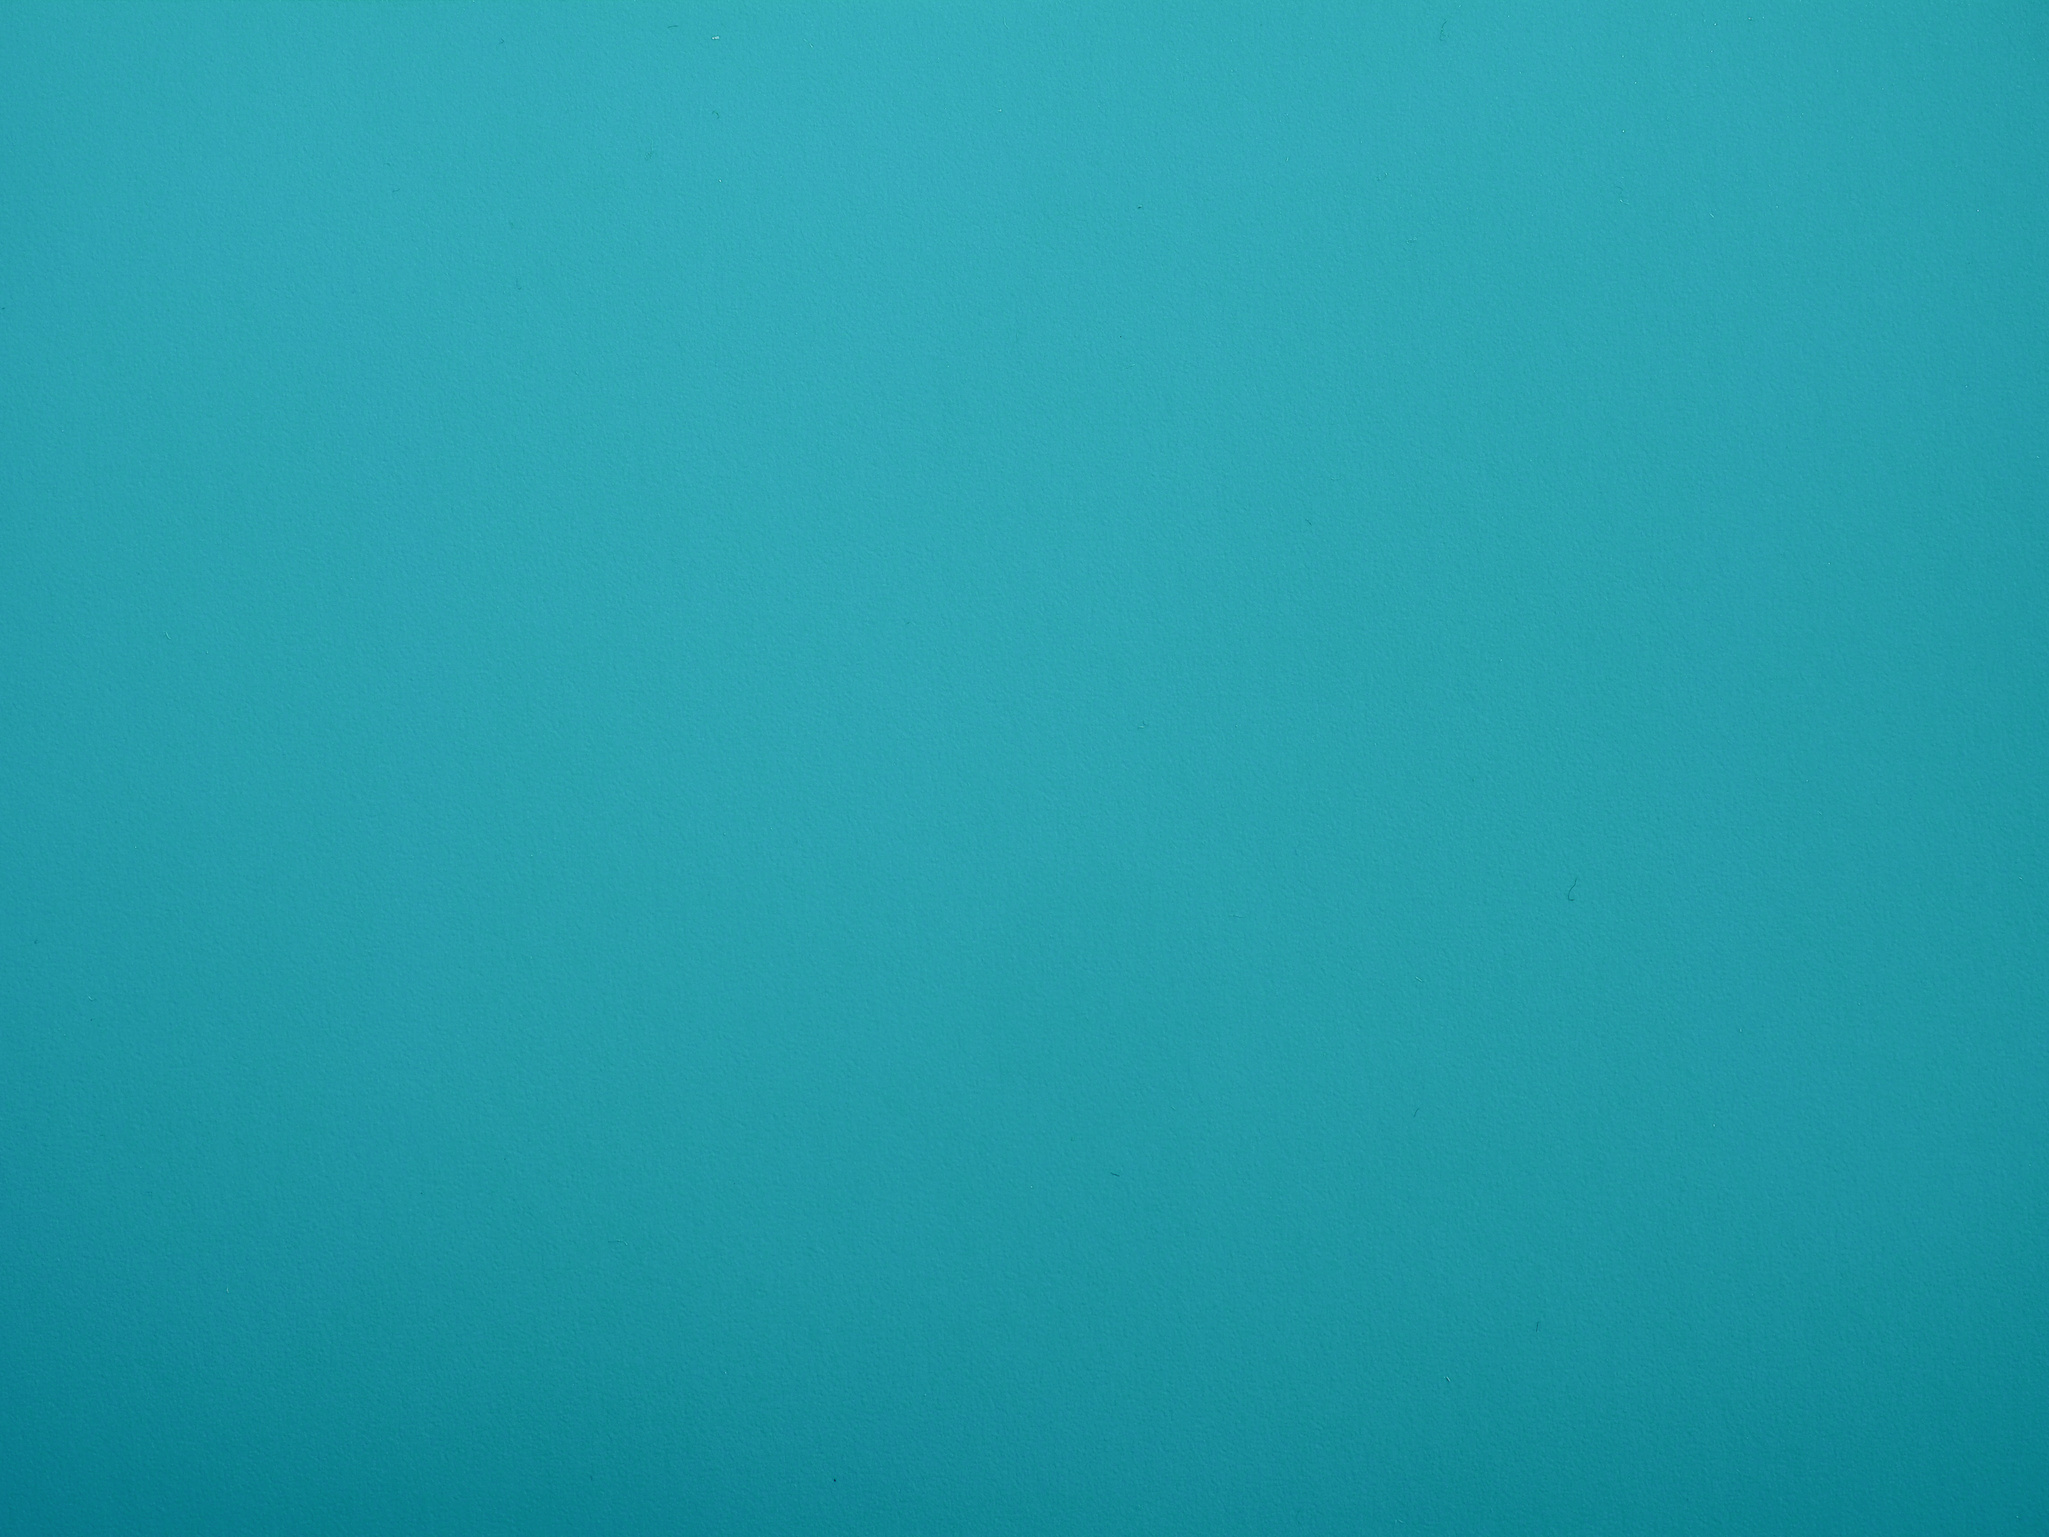 Plain Blue Texture Background